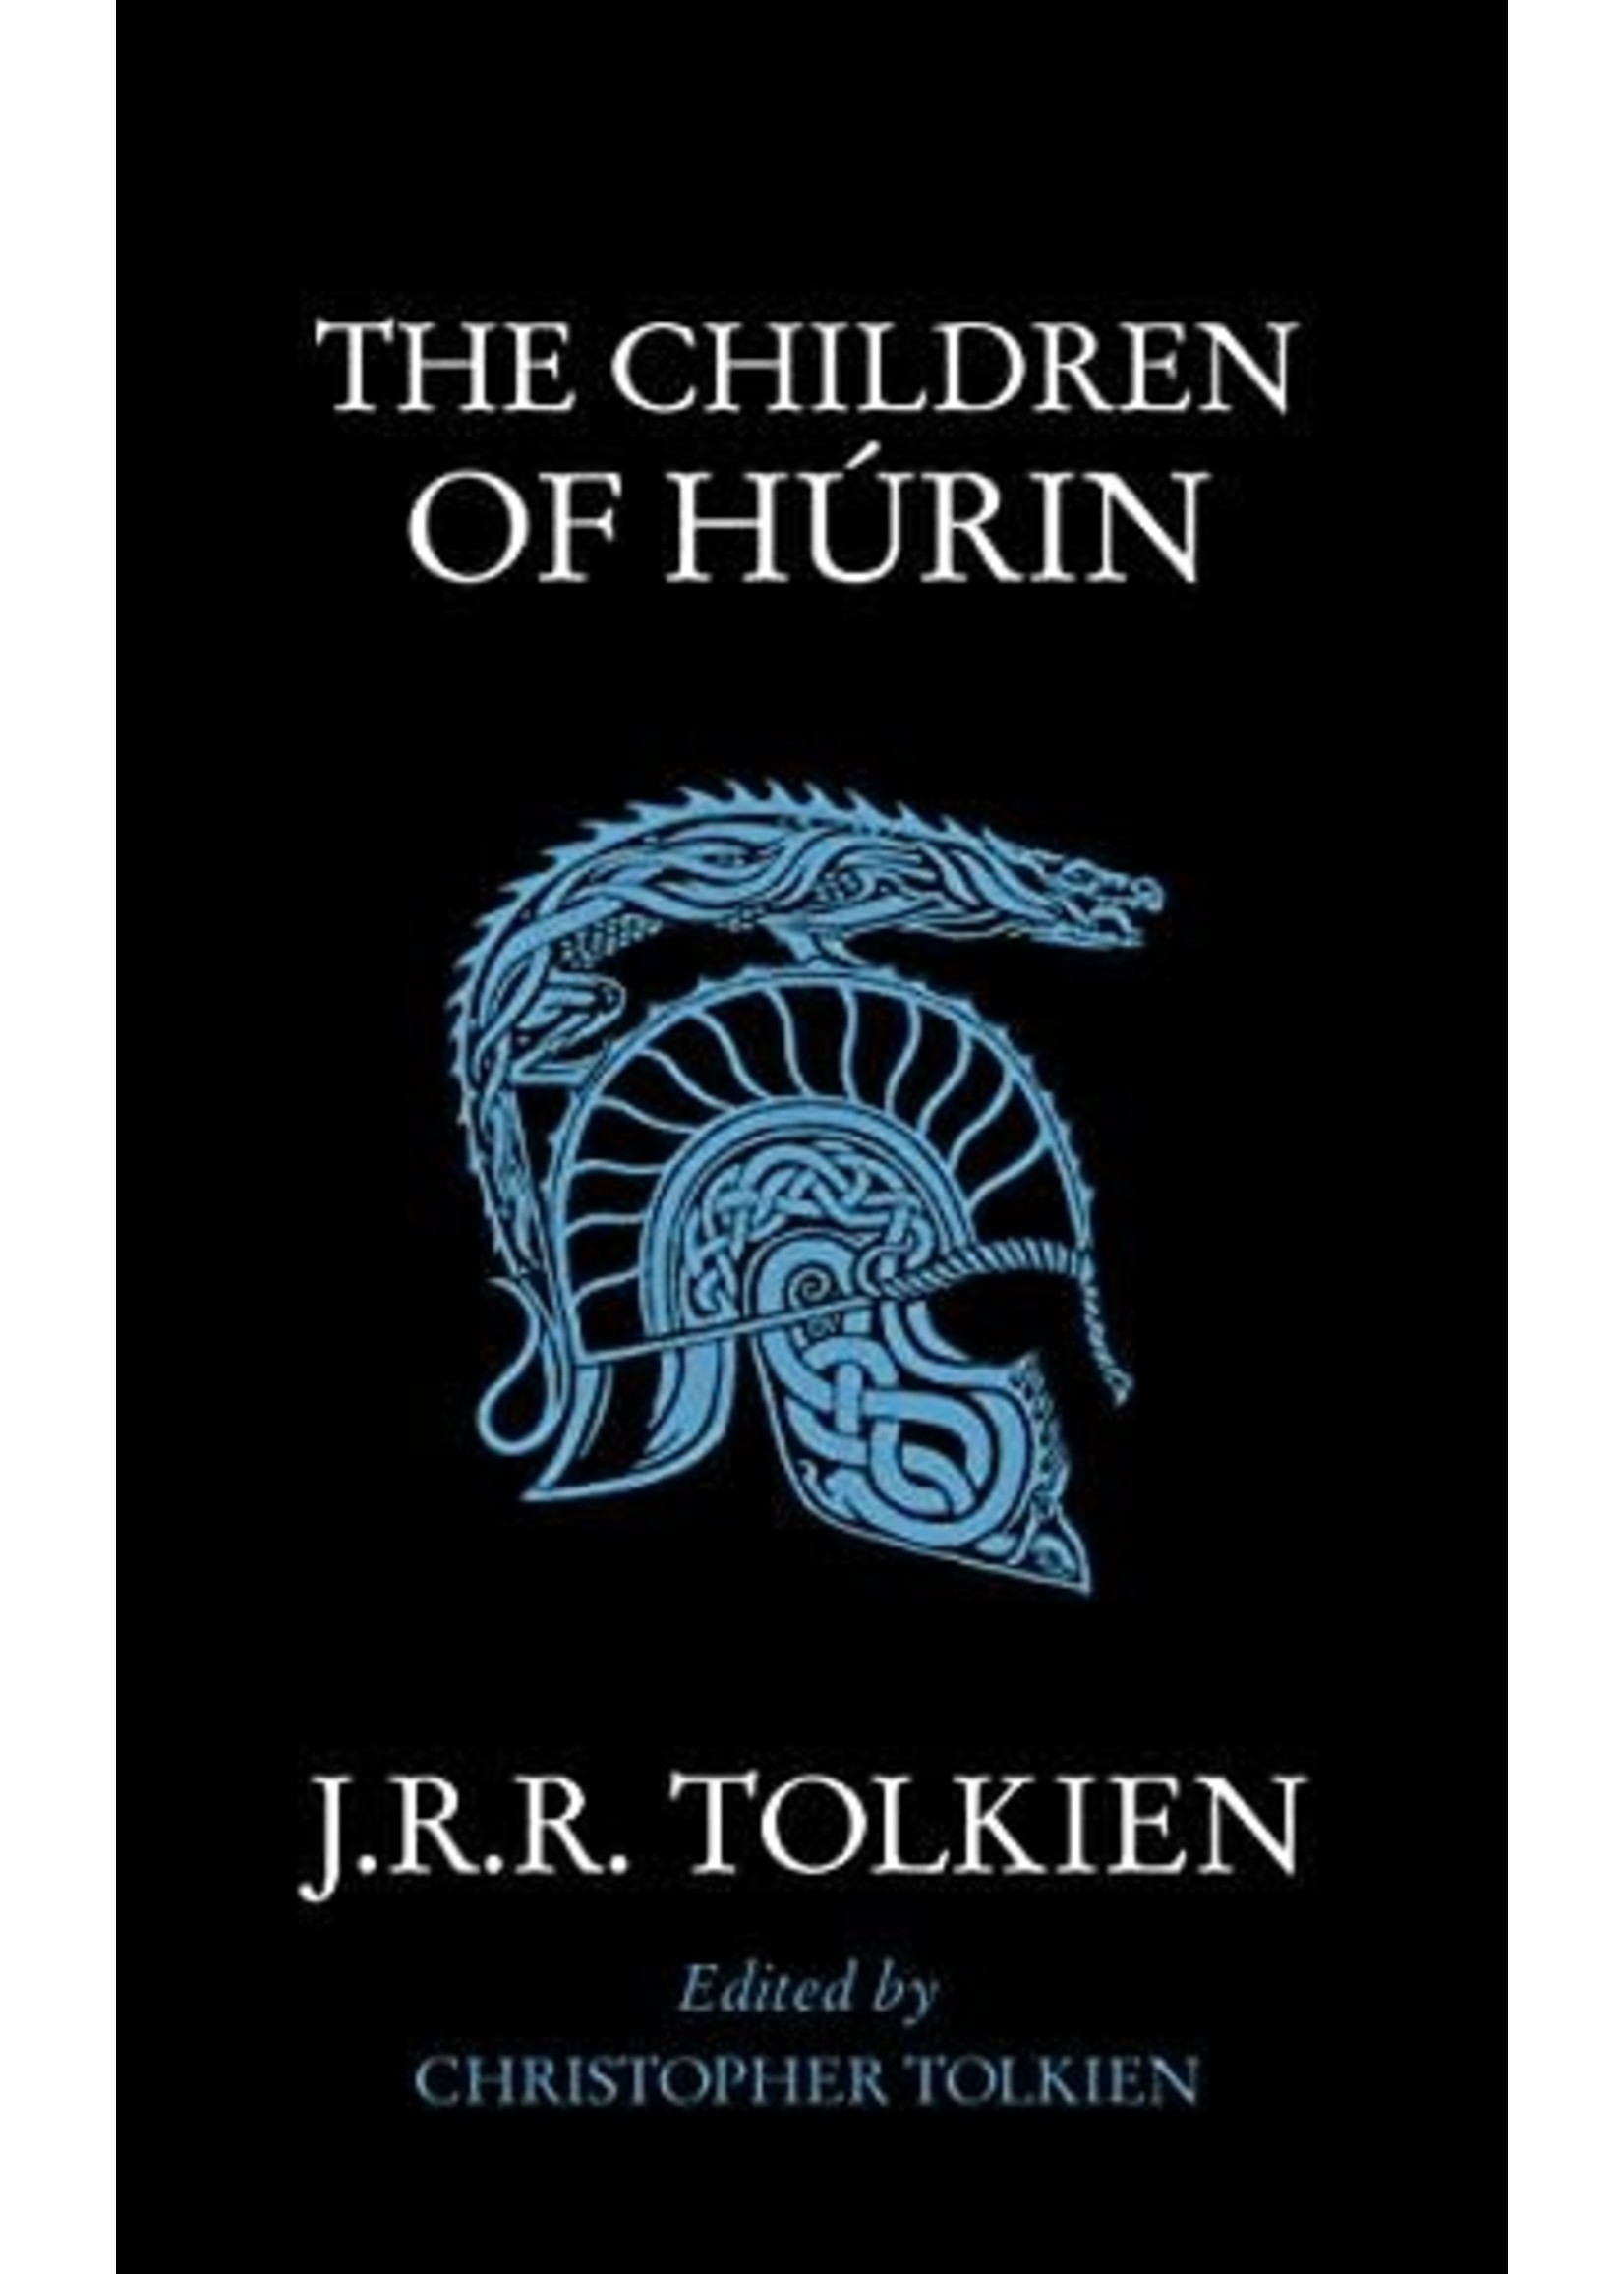 The Children of Húrin by J.R.R. Tolkien, Christopher Tolkien